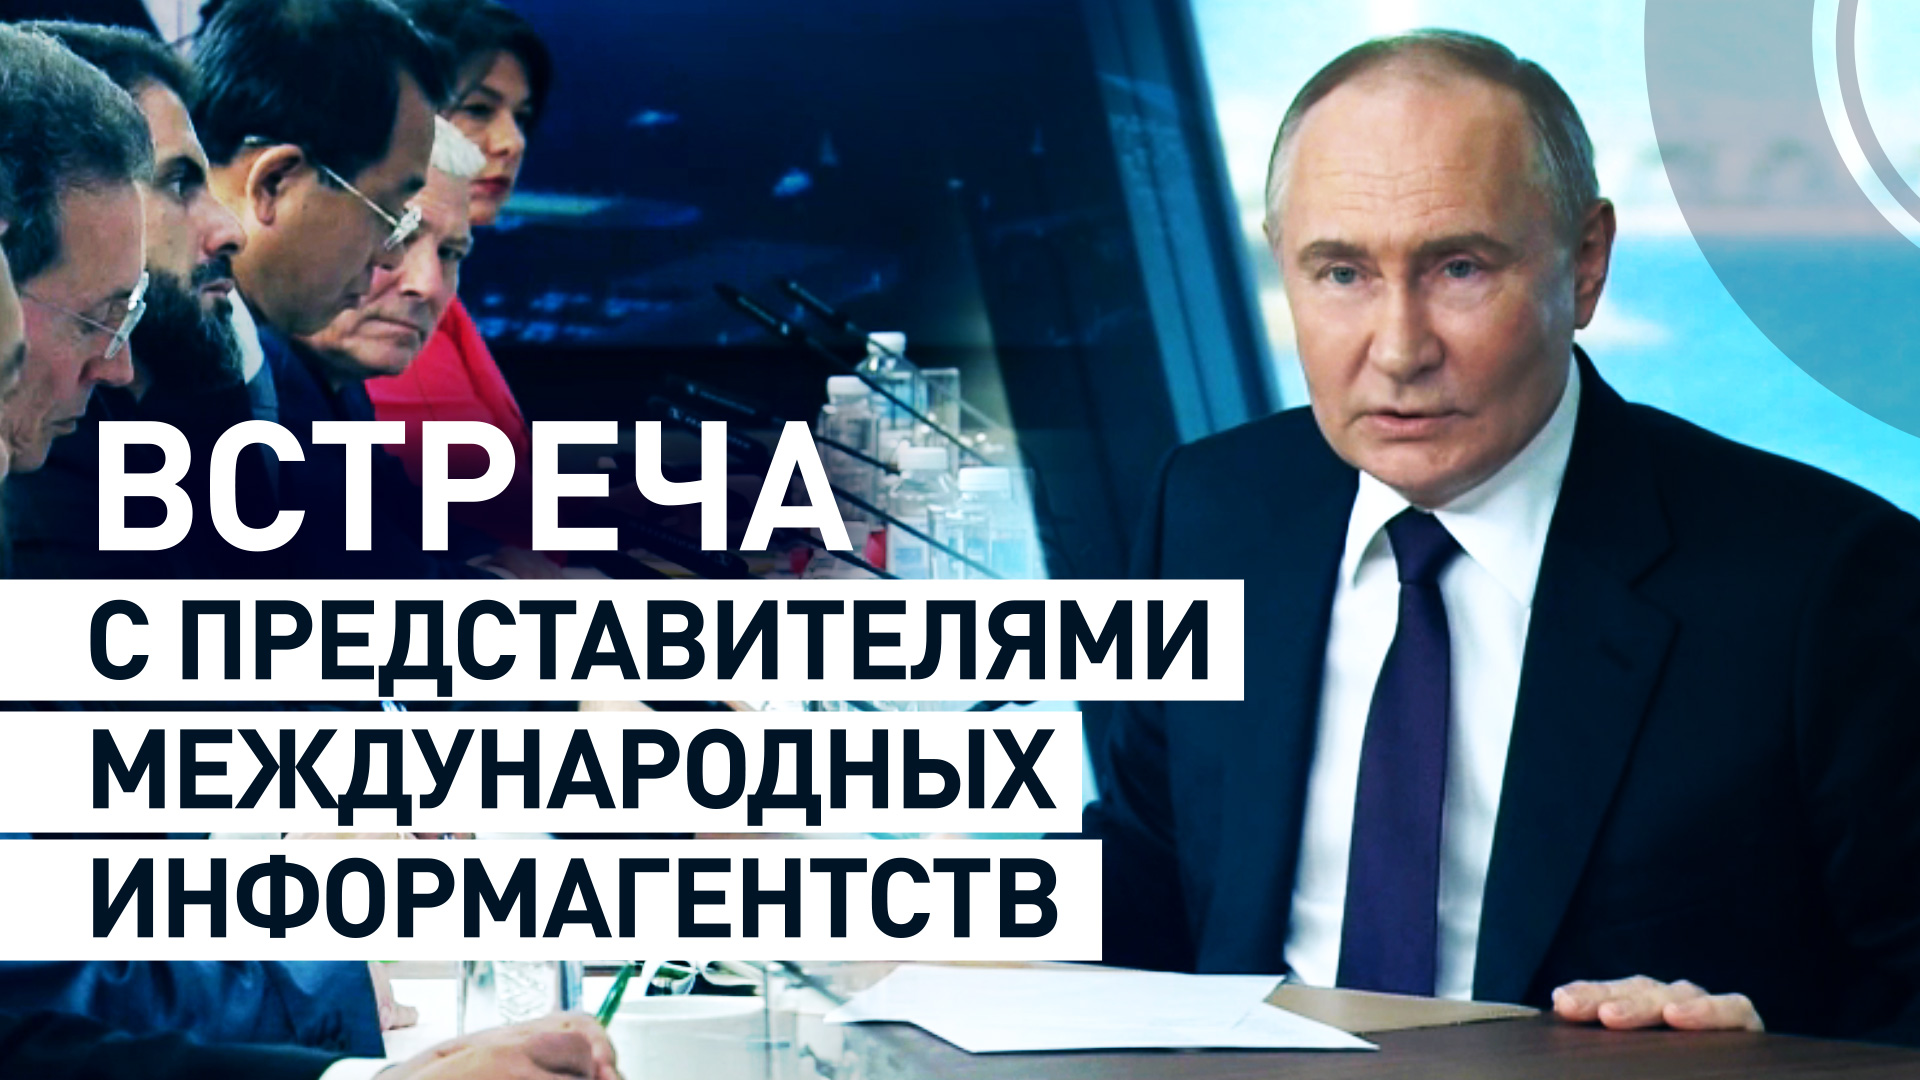 Путин проводит встречу с представителями международных информационных агентств